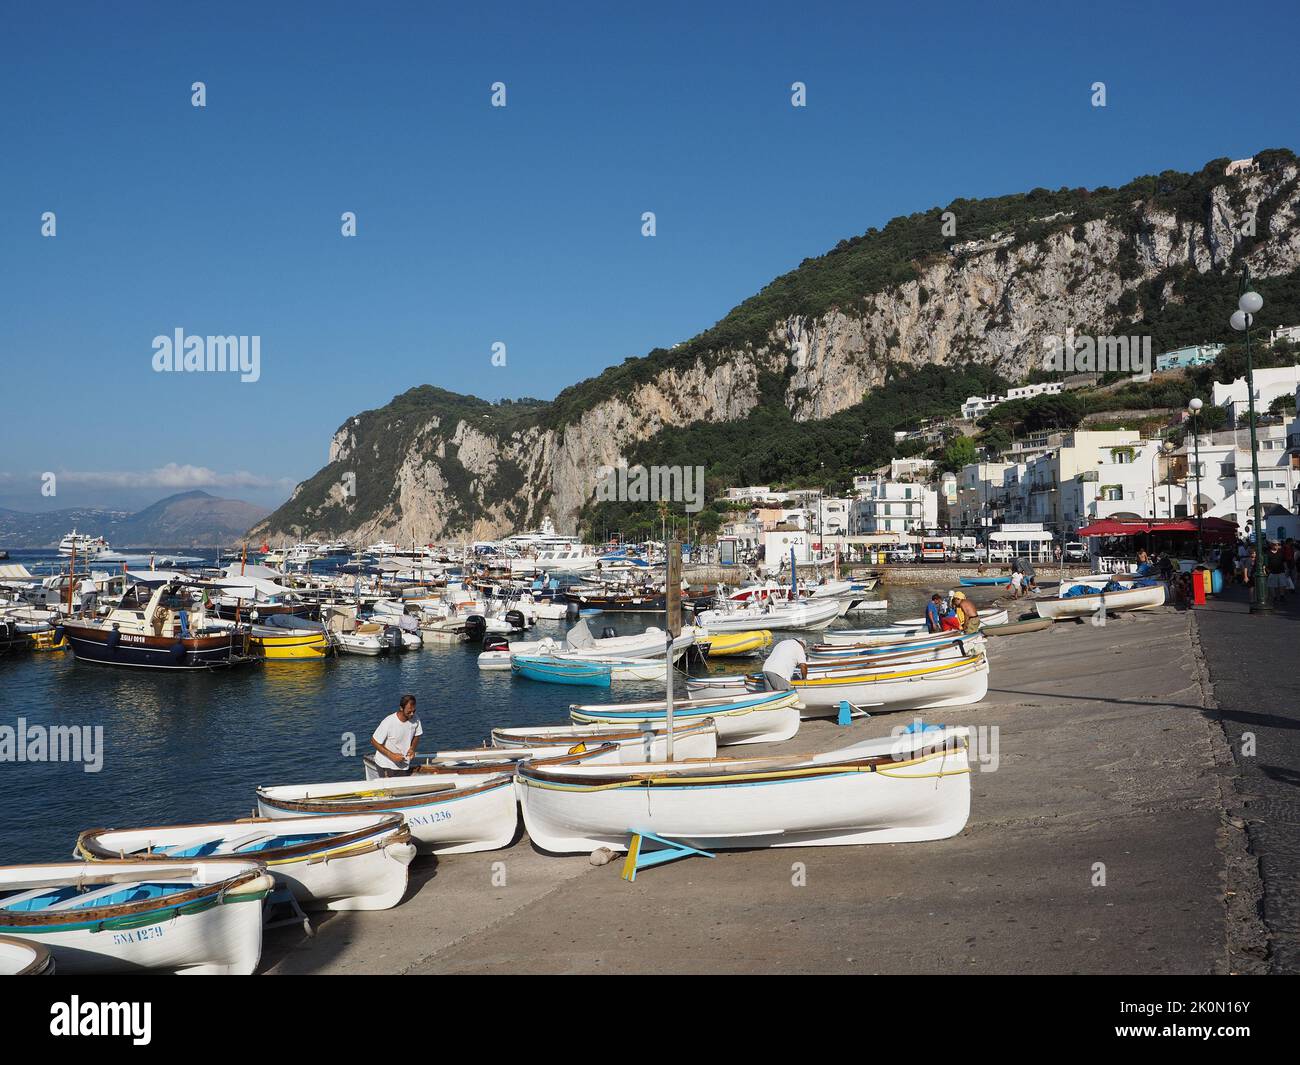 Hafen von Capri mit vielen touristischen Booten, die verwendet werden, um die Grotte azzurro zu besuchen oder um die Insel zu erkunden. Capri, Kampanien, Italien Stockfoto